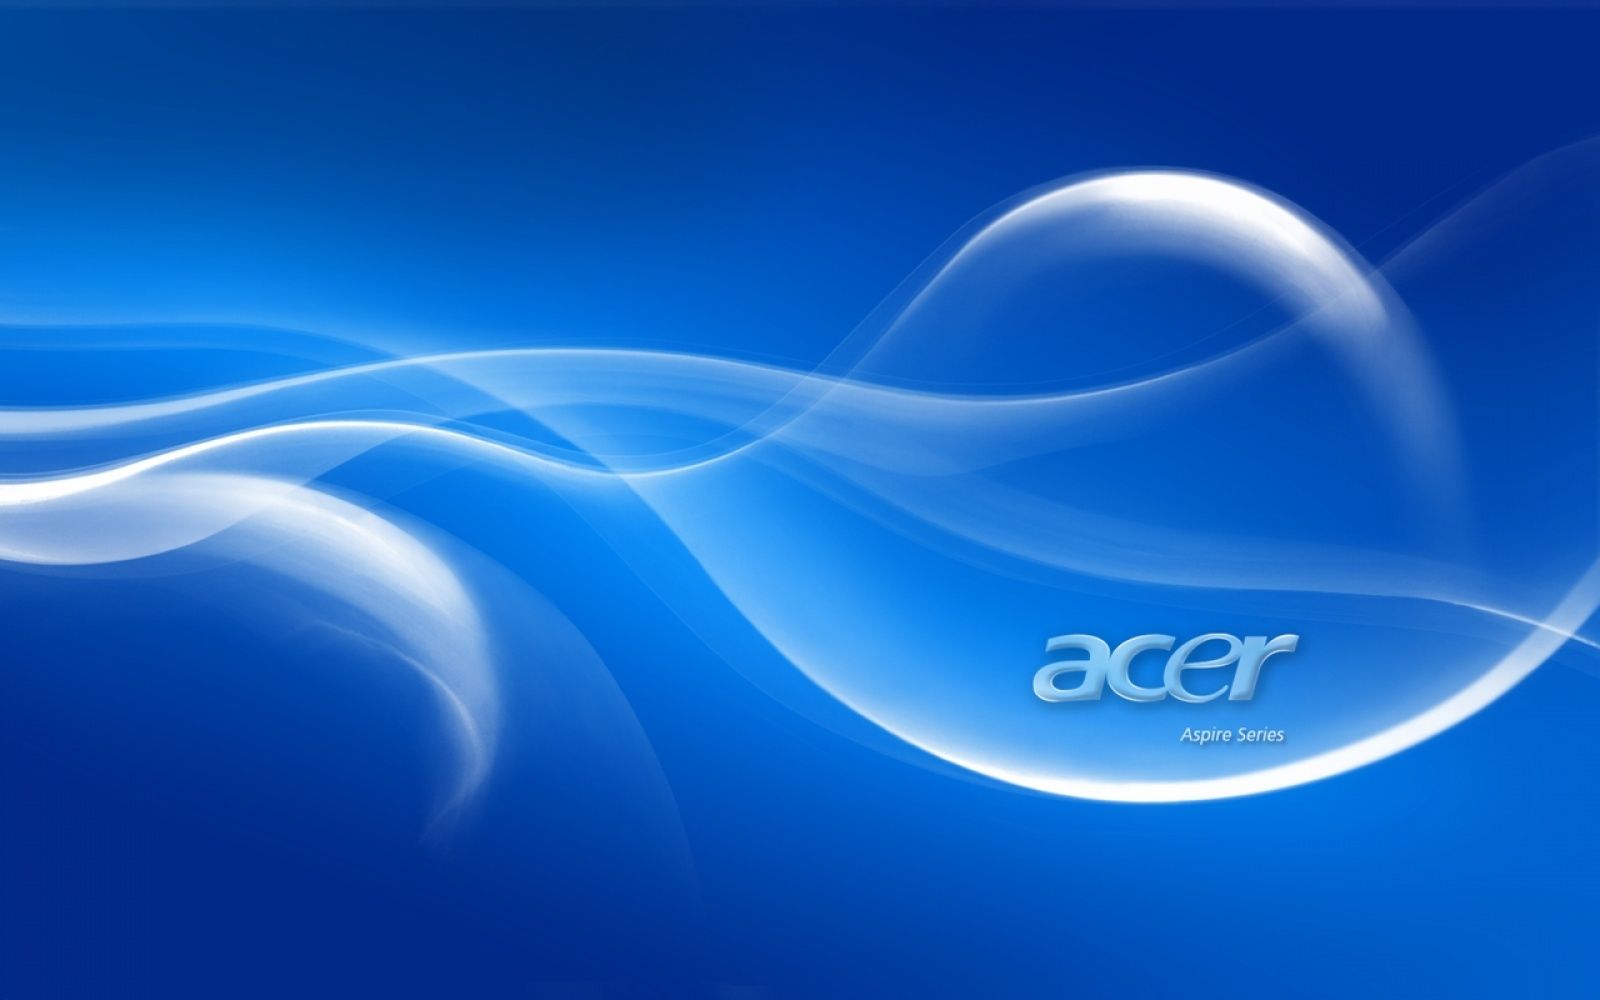 Acer Desktop Wallpapers